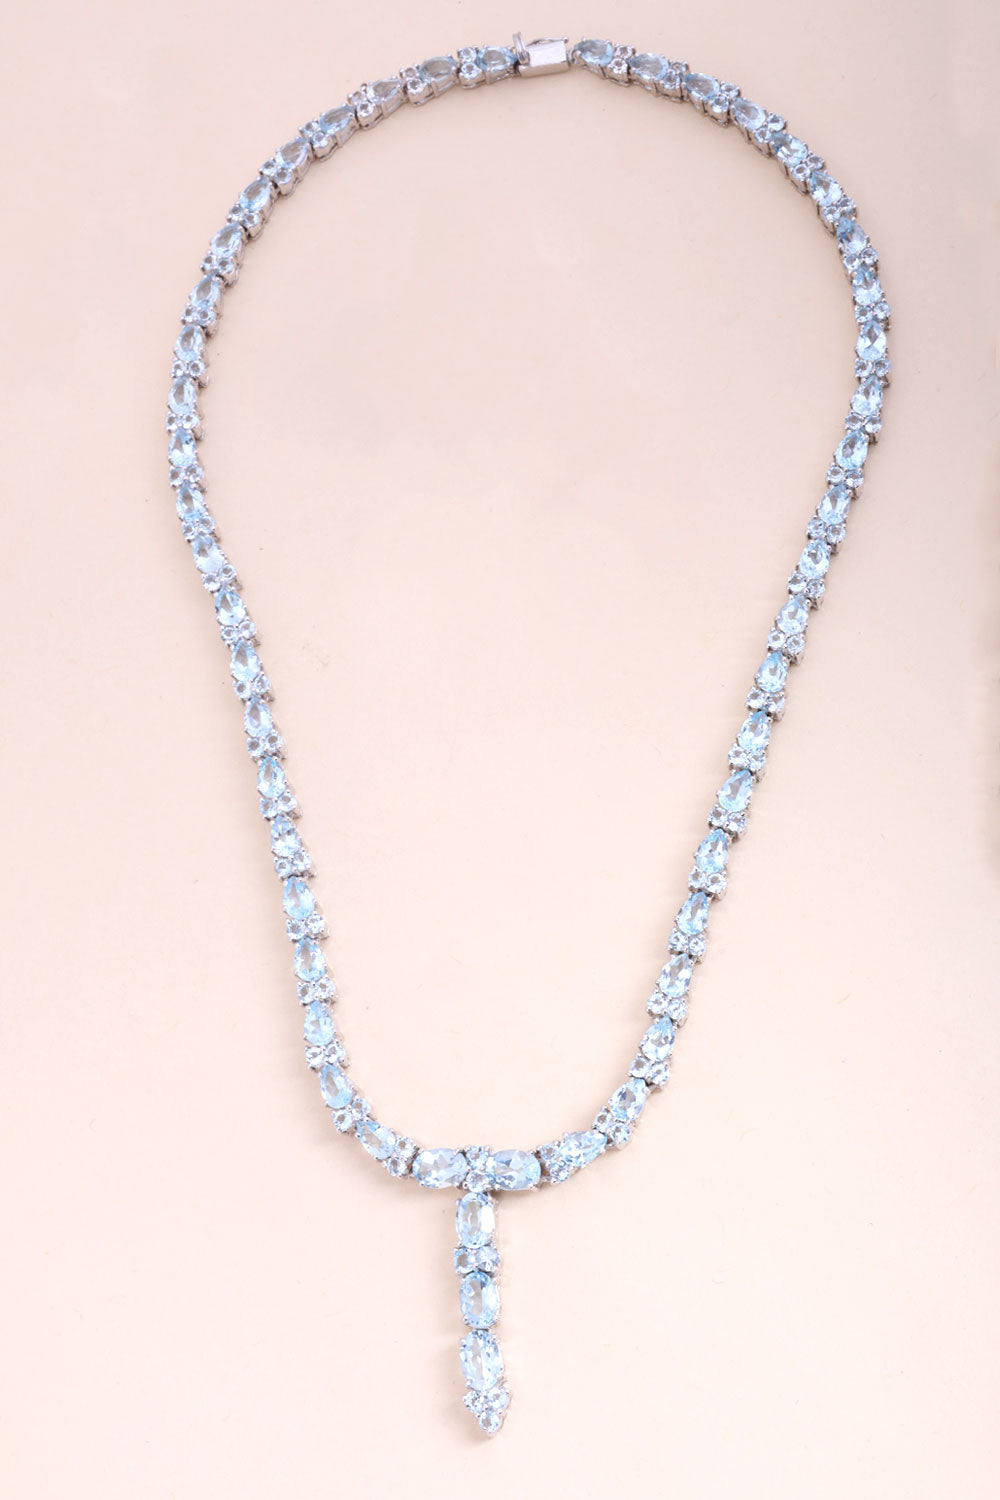 Blue Topaz Sterling Silver Necklace 10067126 - Avishya